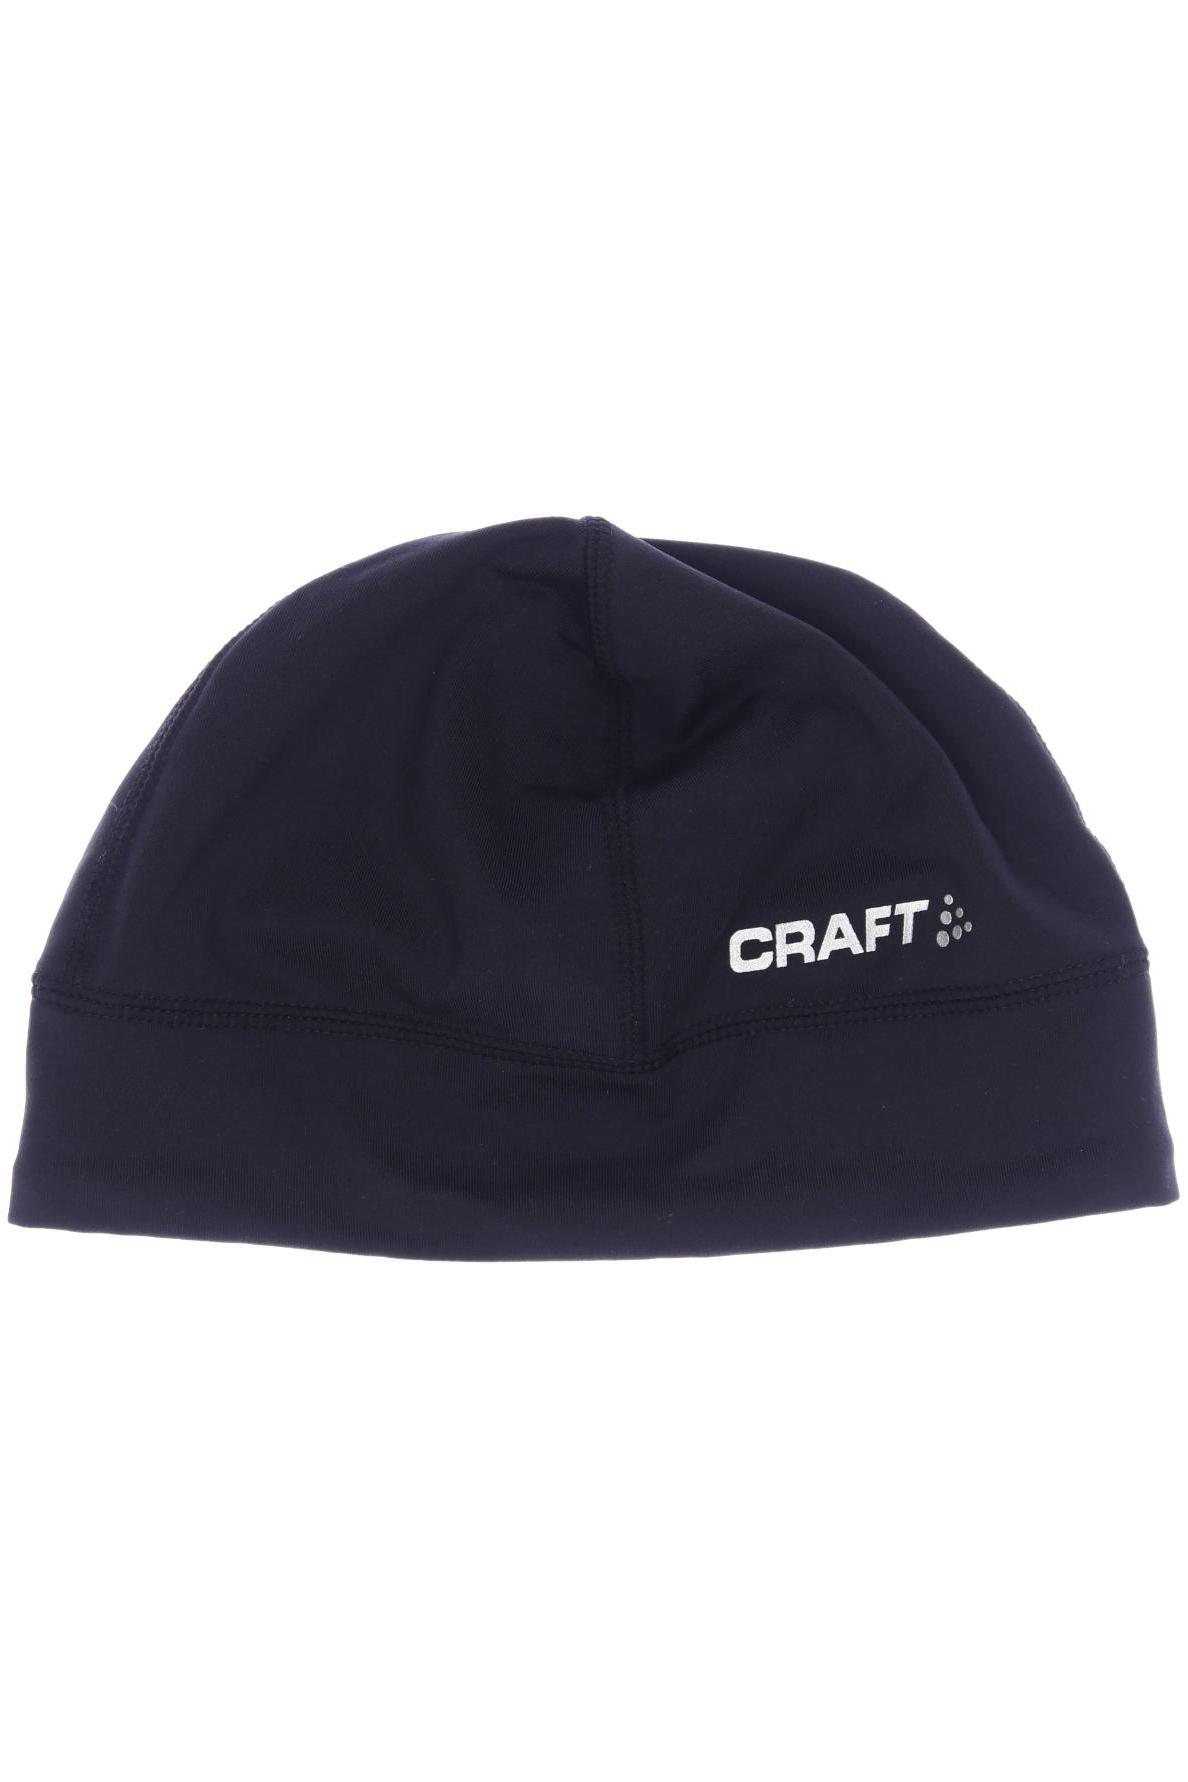 Craft Damen Hut/Mütze, schwarz, Gr. 58 von Craft